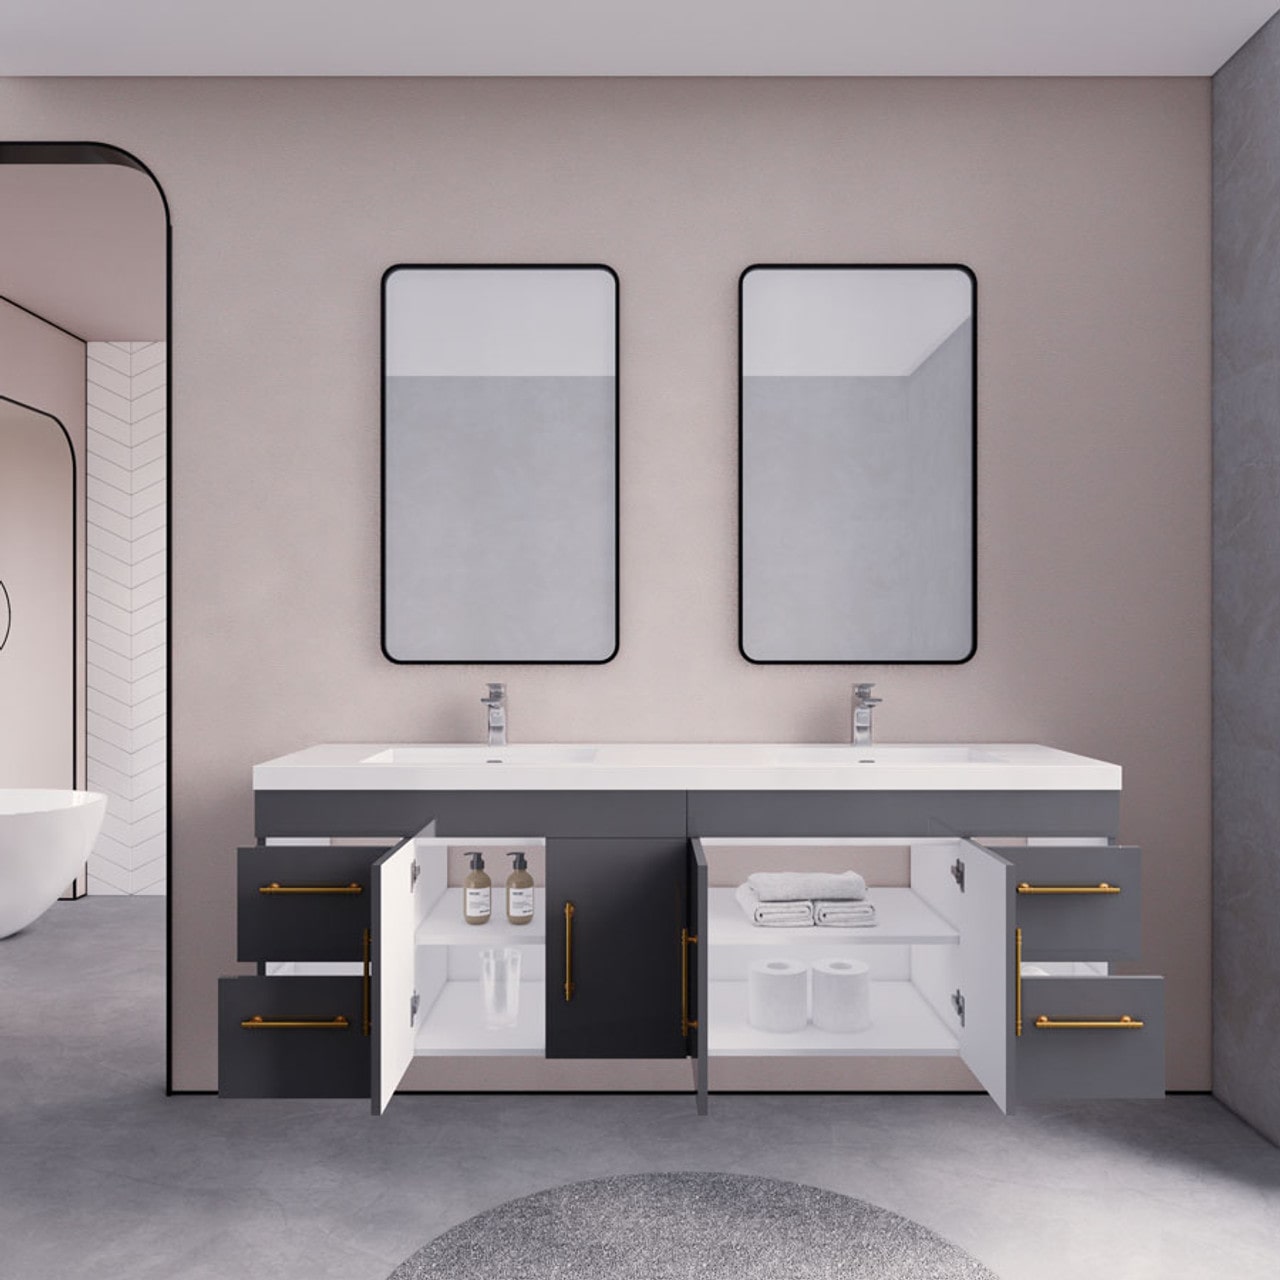 Eliza 72'' Wall Mount Vanity With Double Sink - Luxury Bathroom Vanity